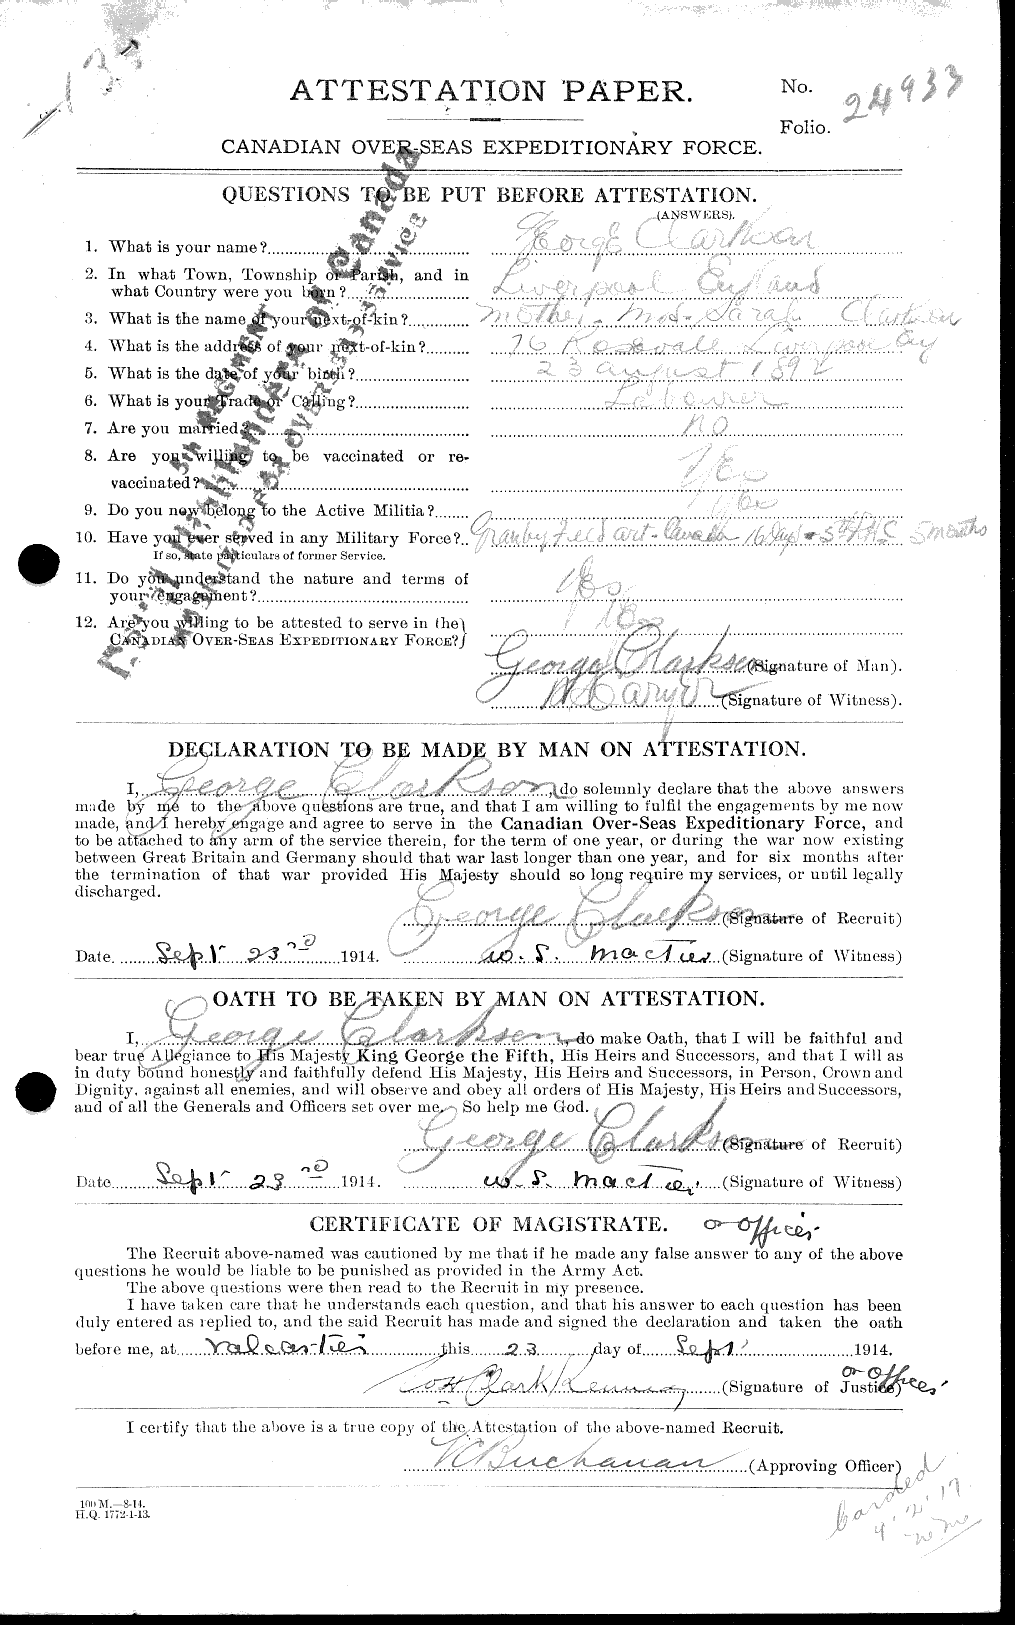 Dossiers du Personnel de la Première Guerre mondiale - CEC 021428a